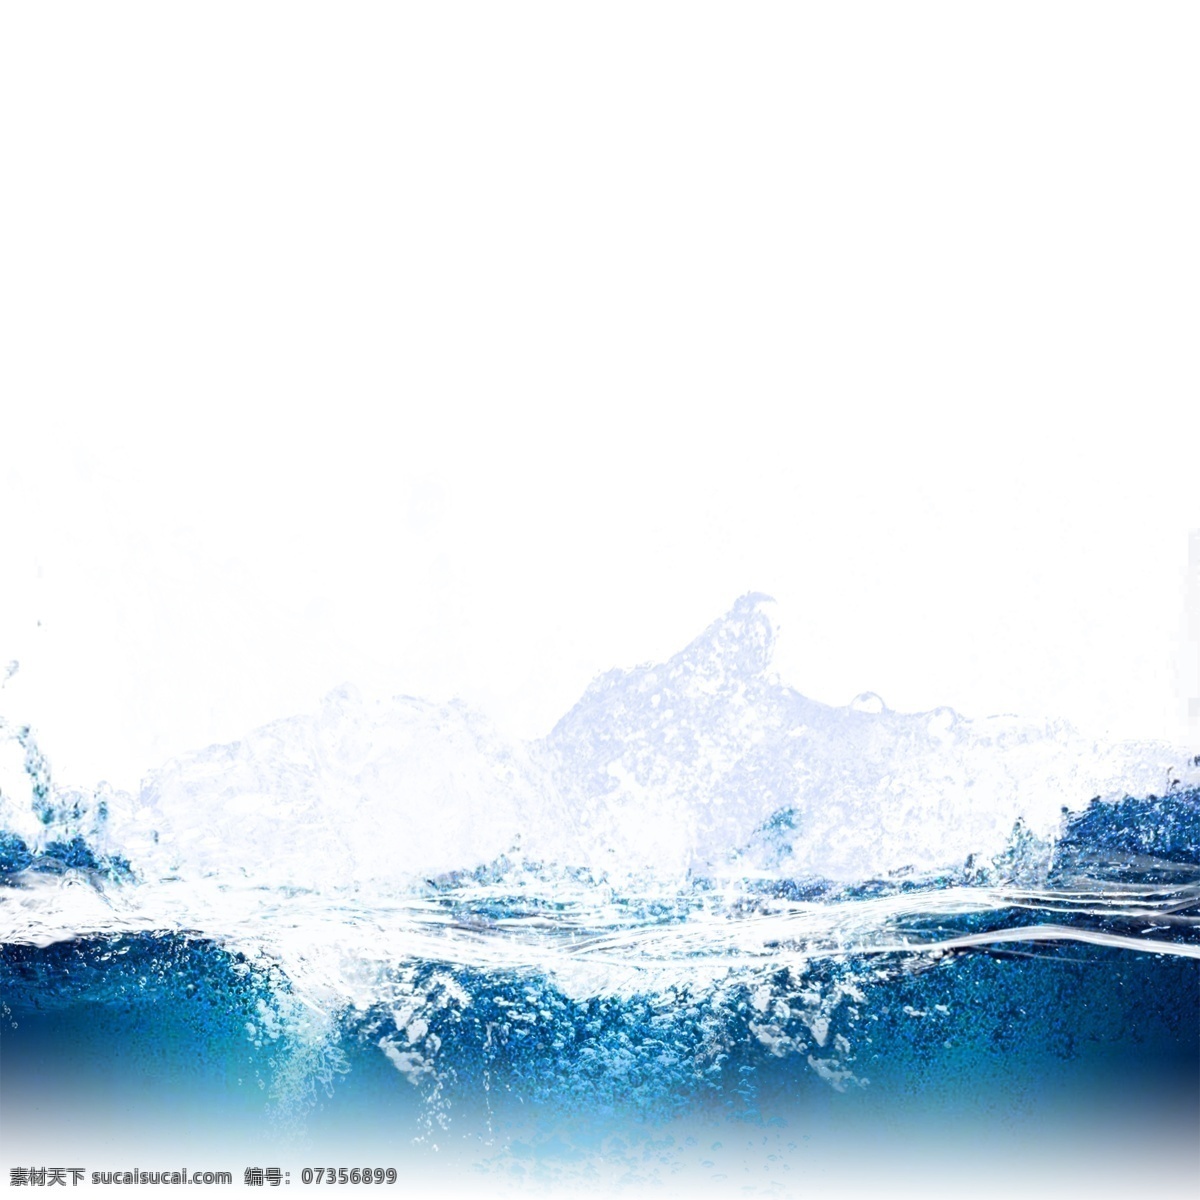 波浪 水面 水 波纹 元素 水波浪 喷溅 动感 水珠 水滴 水花 蓝色水花 晶莹 透明